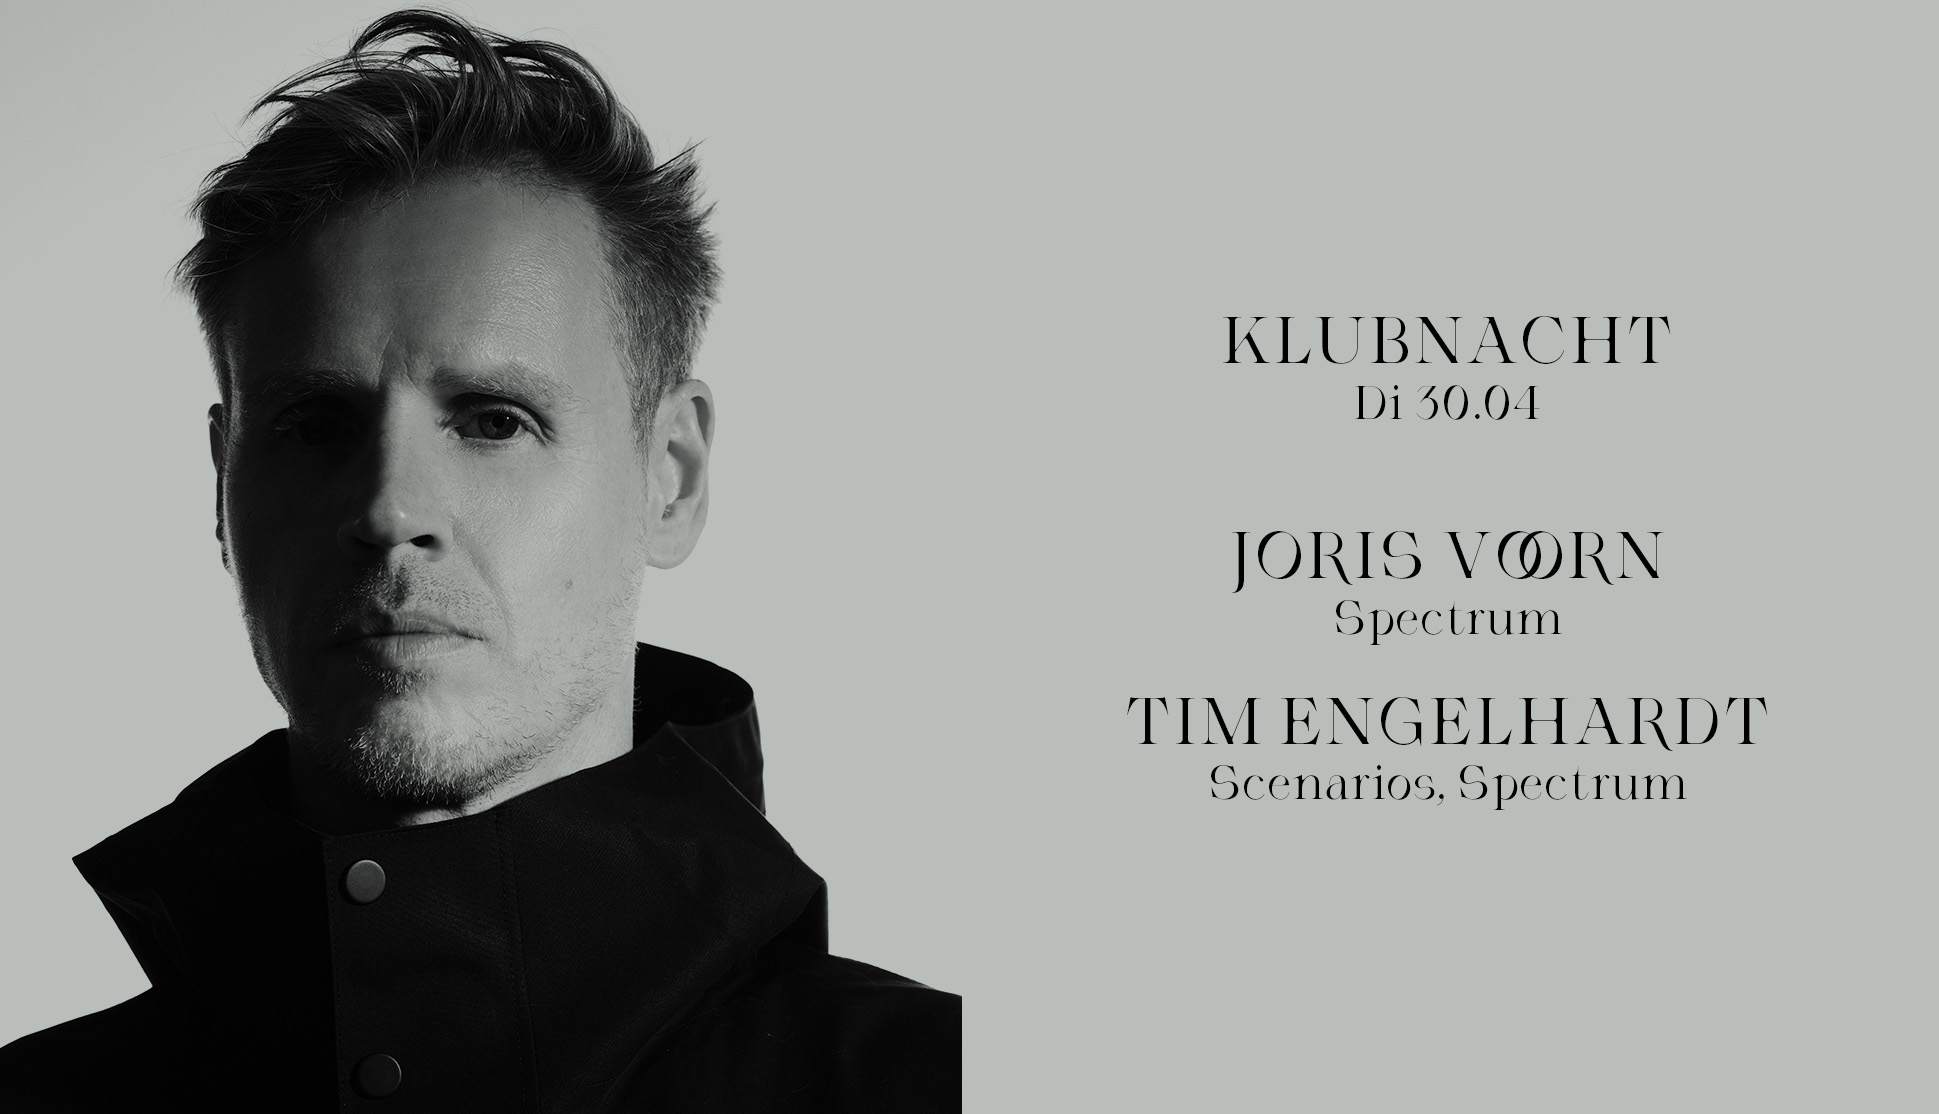 Klubnacht with Joris Voorn & Tim Engelhardt - フライヤー表